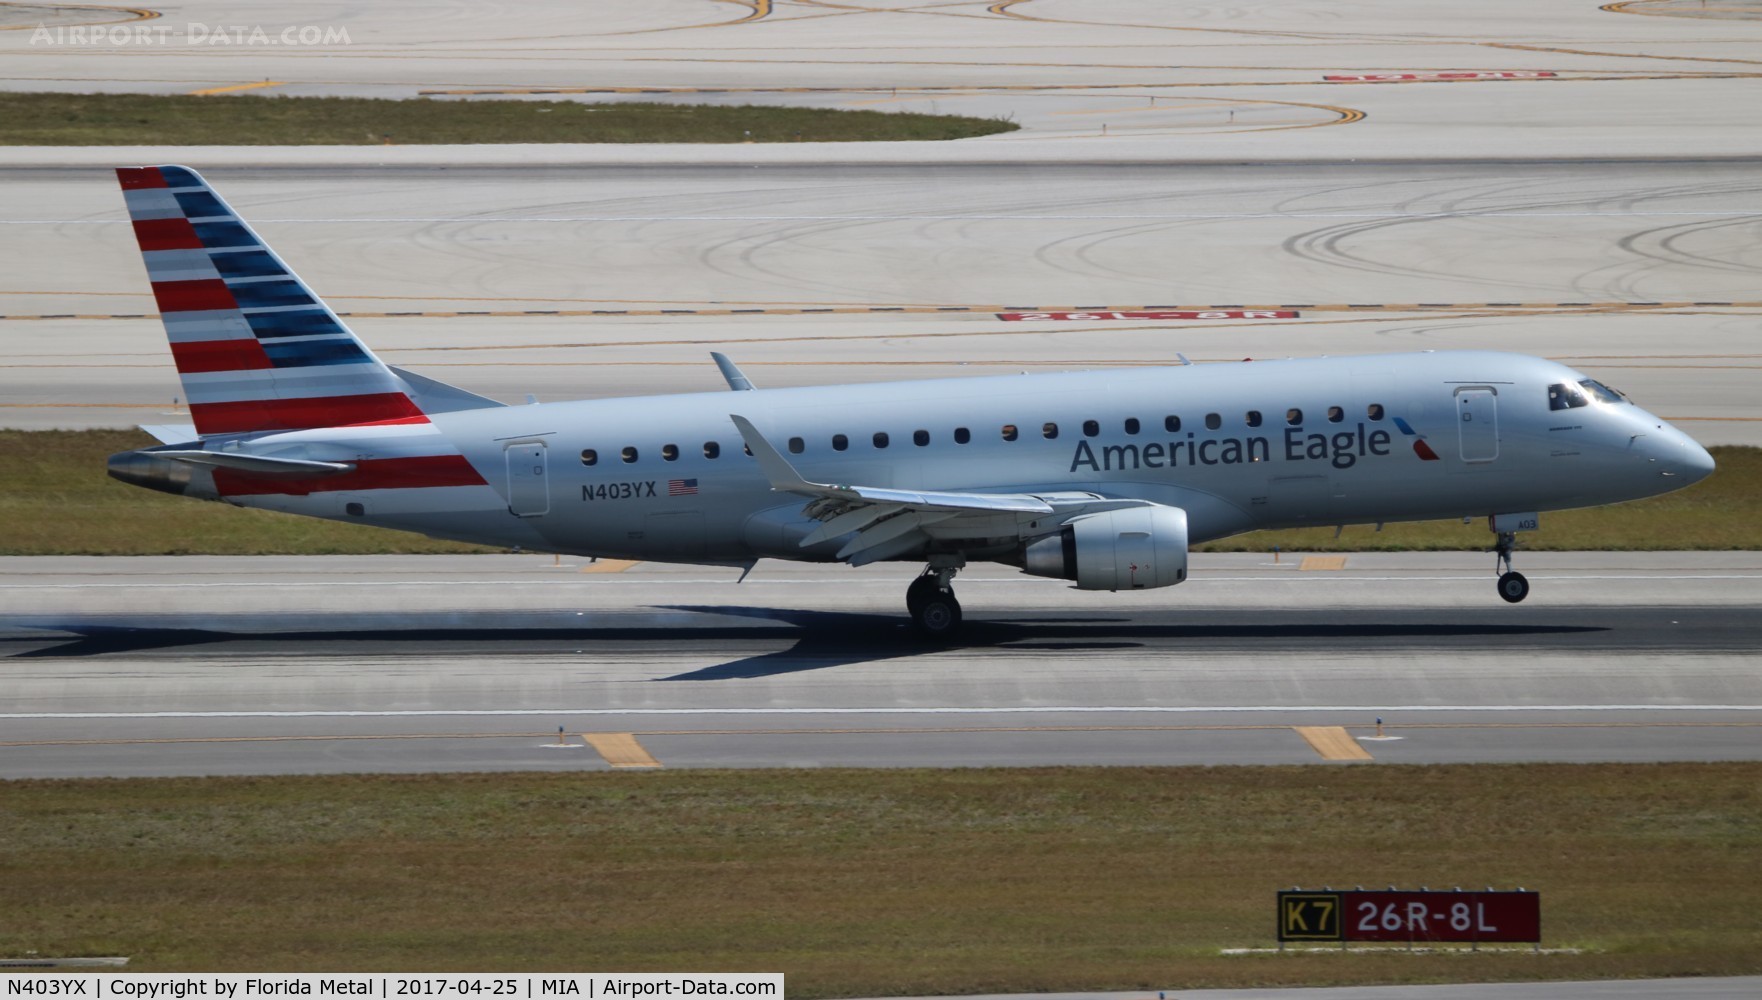 N403YX, 2013 Embraer 175LR (ERJ-170-200LR) C/N 17000365, American Eagle